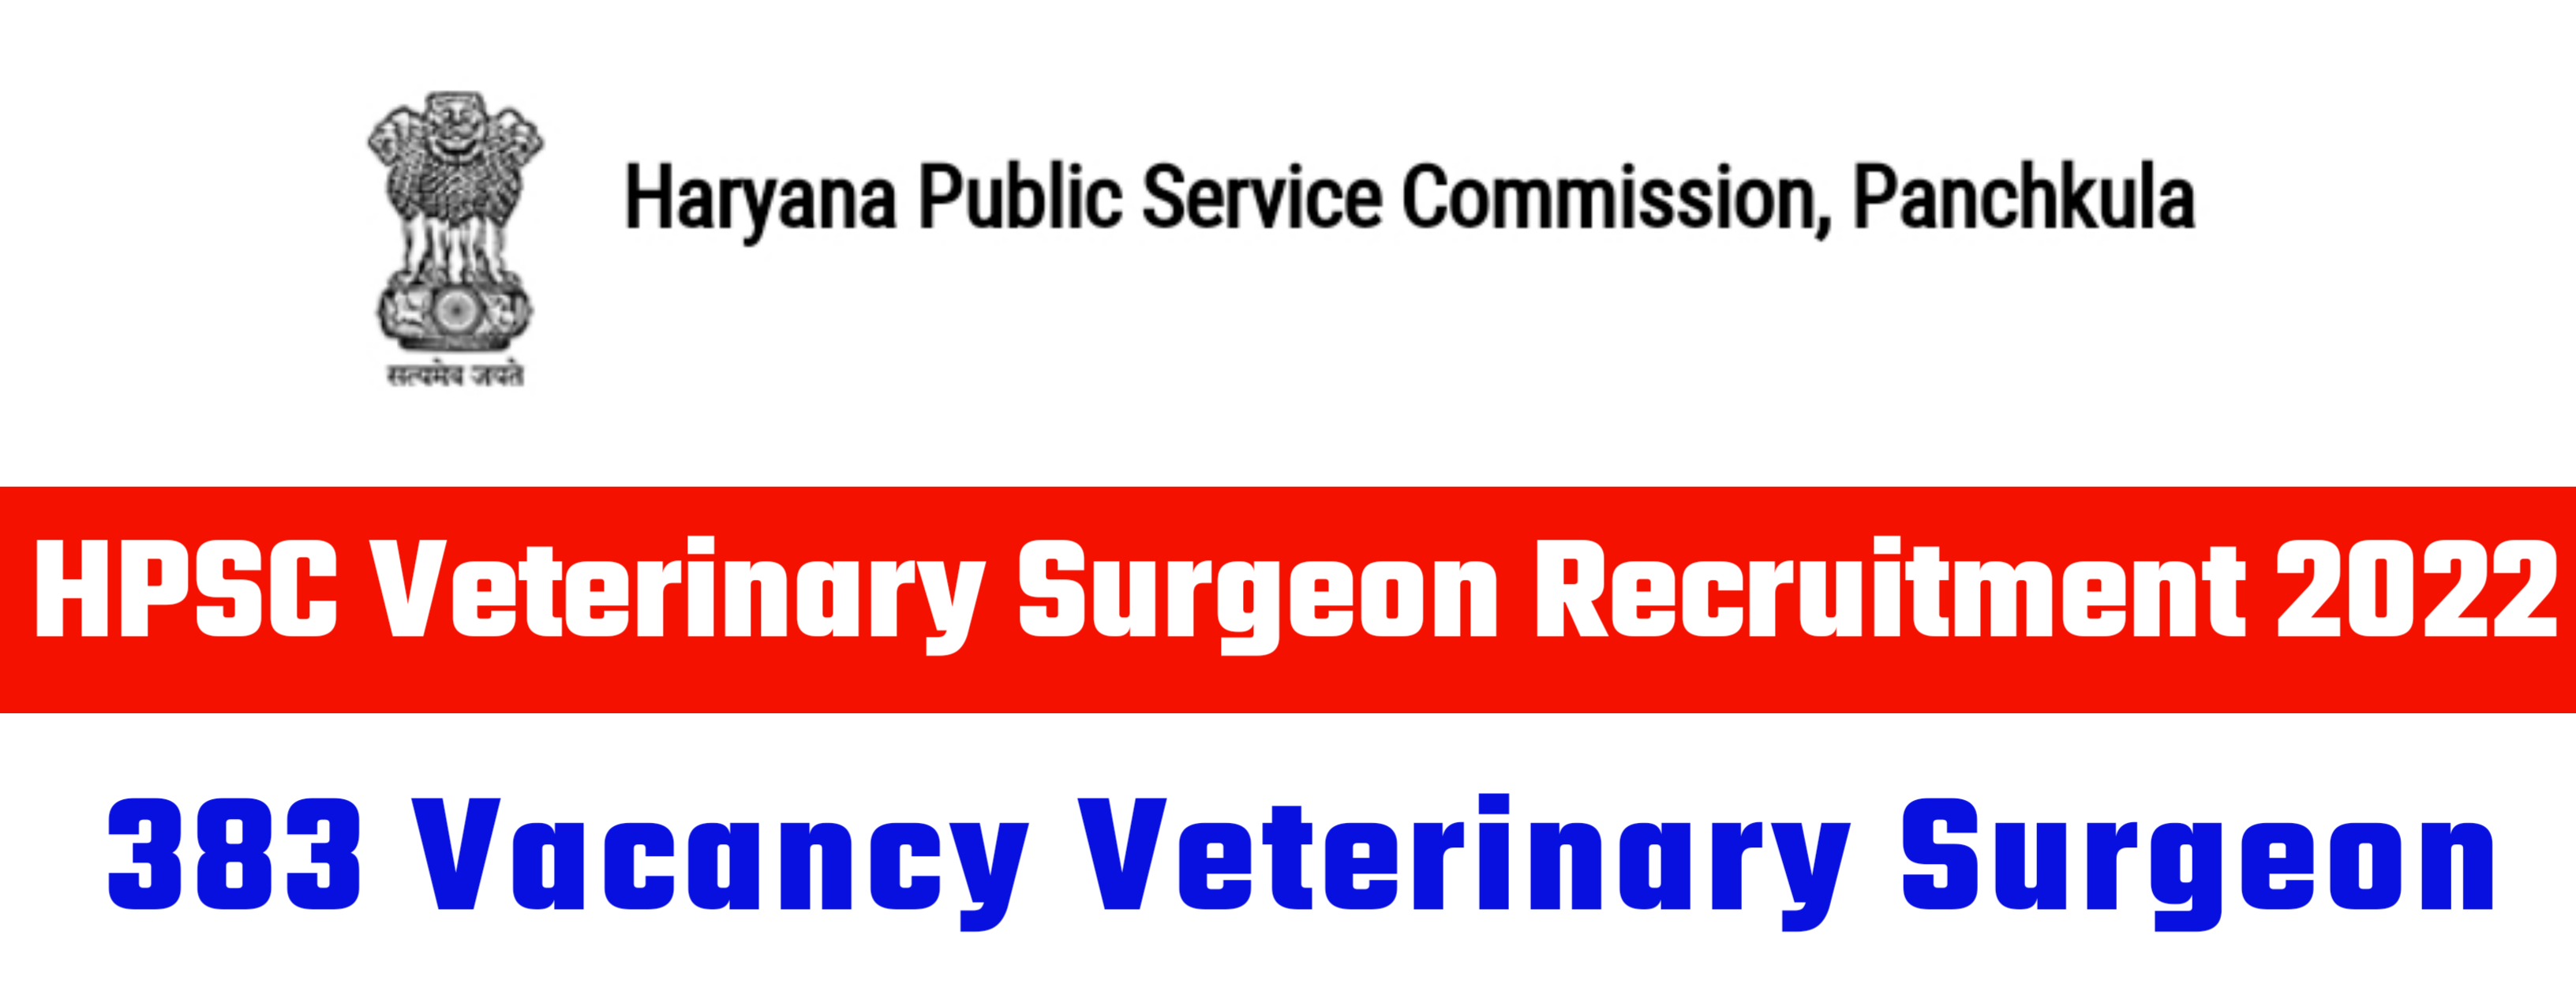 HPSC Veterinary Surgeon Recruitment 2022